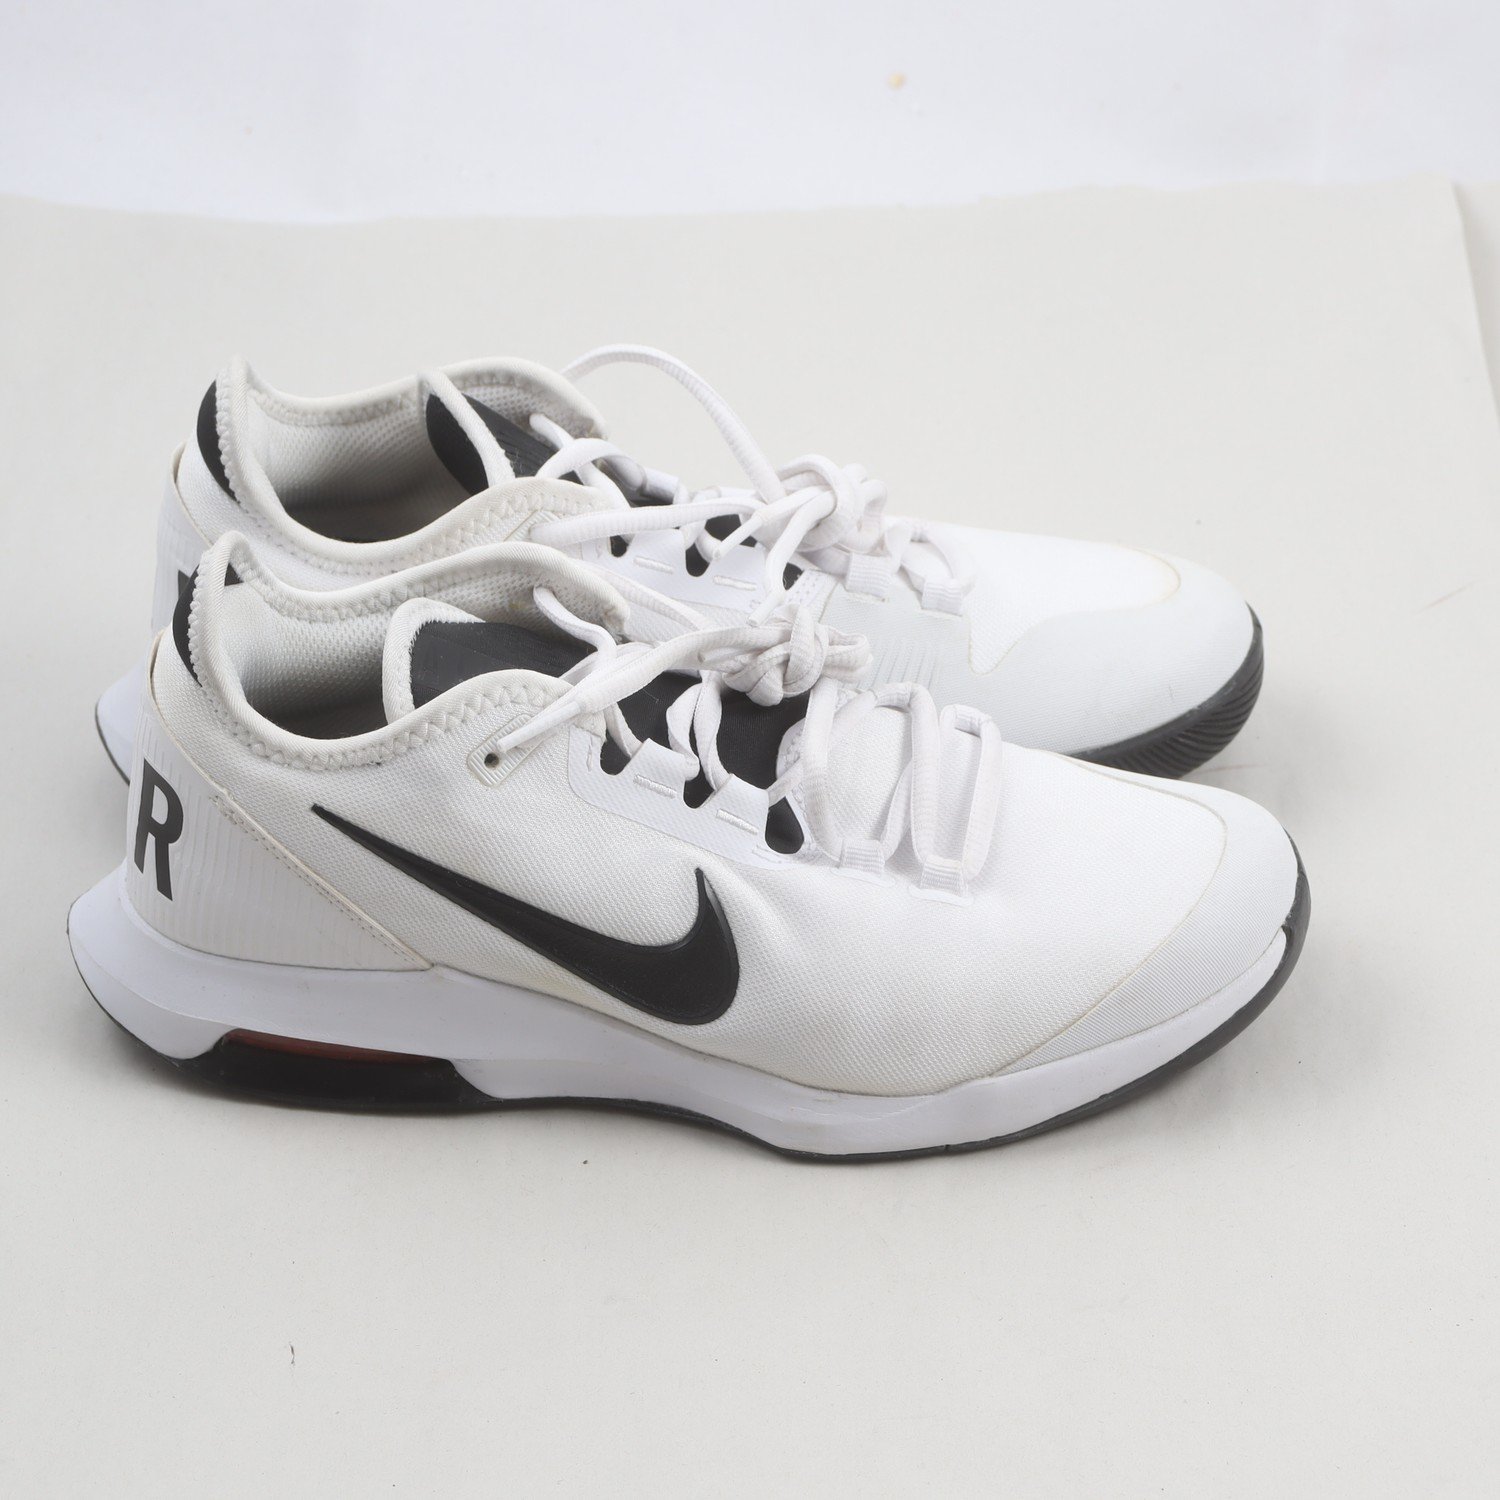 Sneakers, Nike Air Max, stl. 40.5